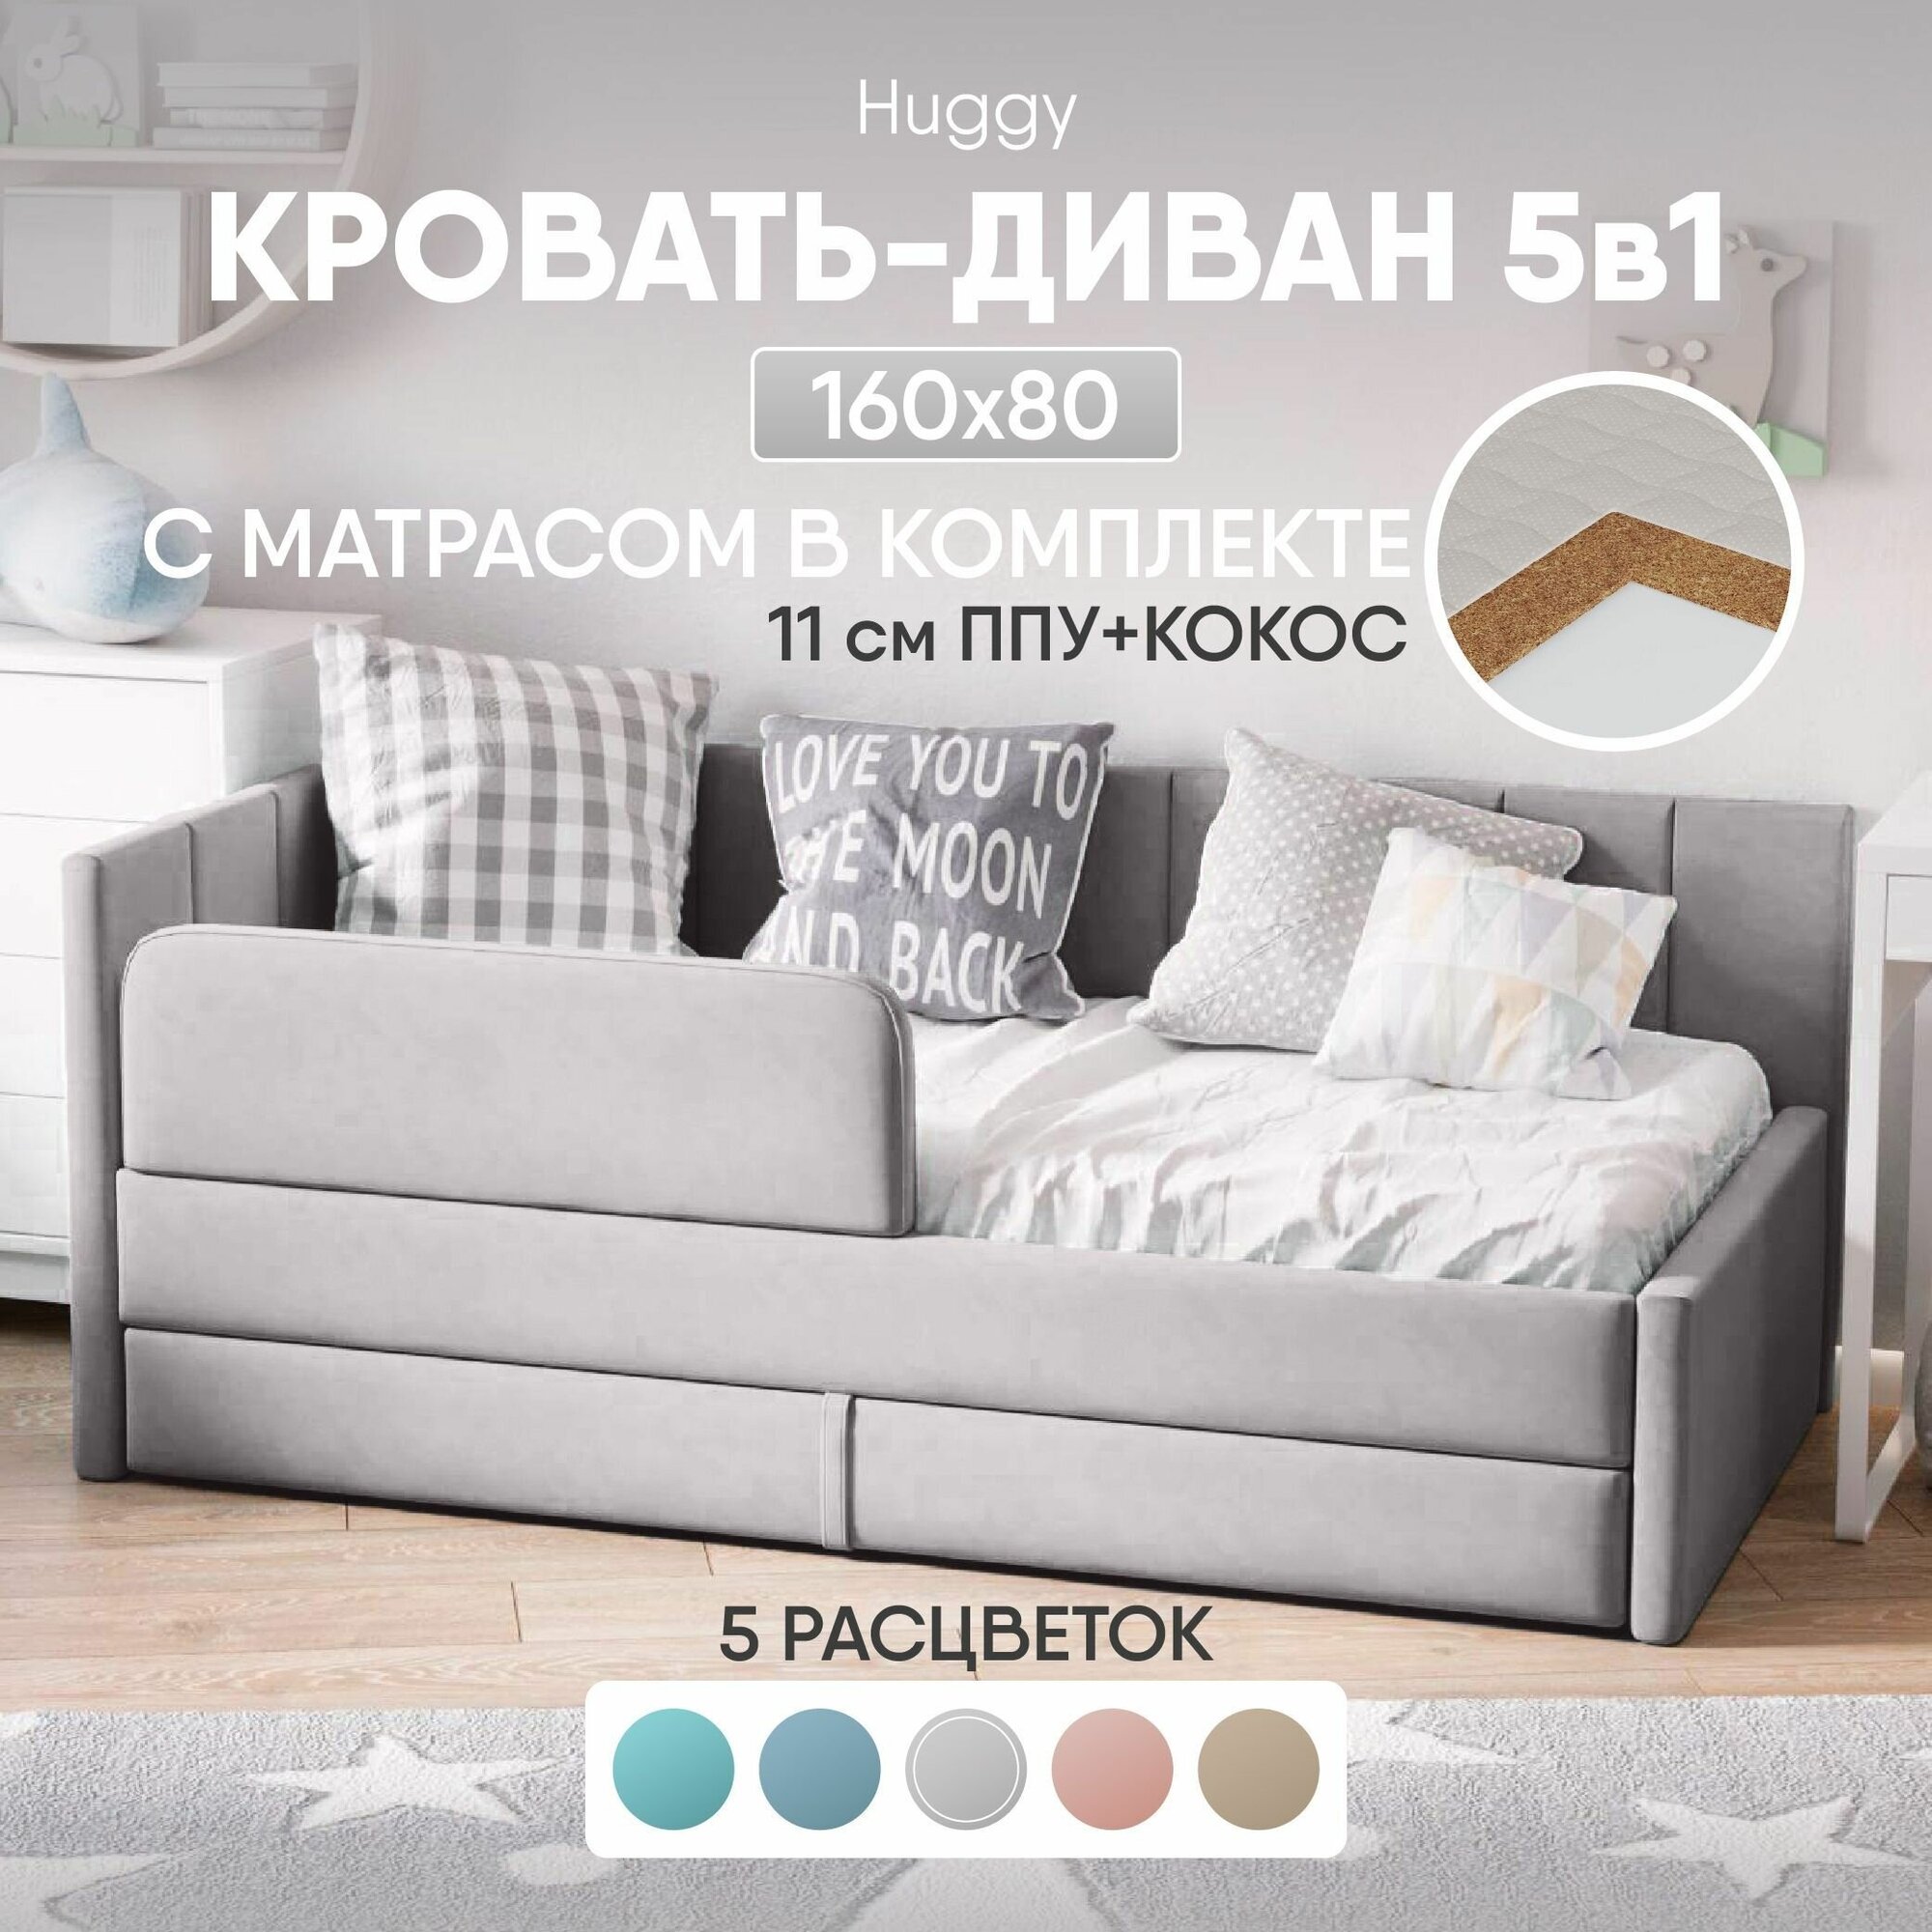 Кровать диван с матрасом 160х80 см Huggy выкатной от 3 лет, цвет Серый,тахта кровать детская односпальная подростковая с ящиком и защитнымибортиками — купить в интернет-магазине по низкой цене на Яндекс